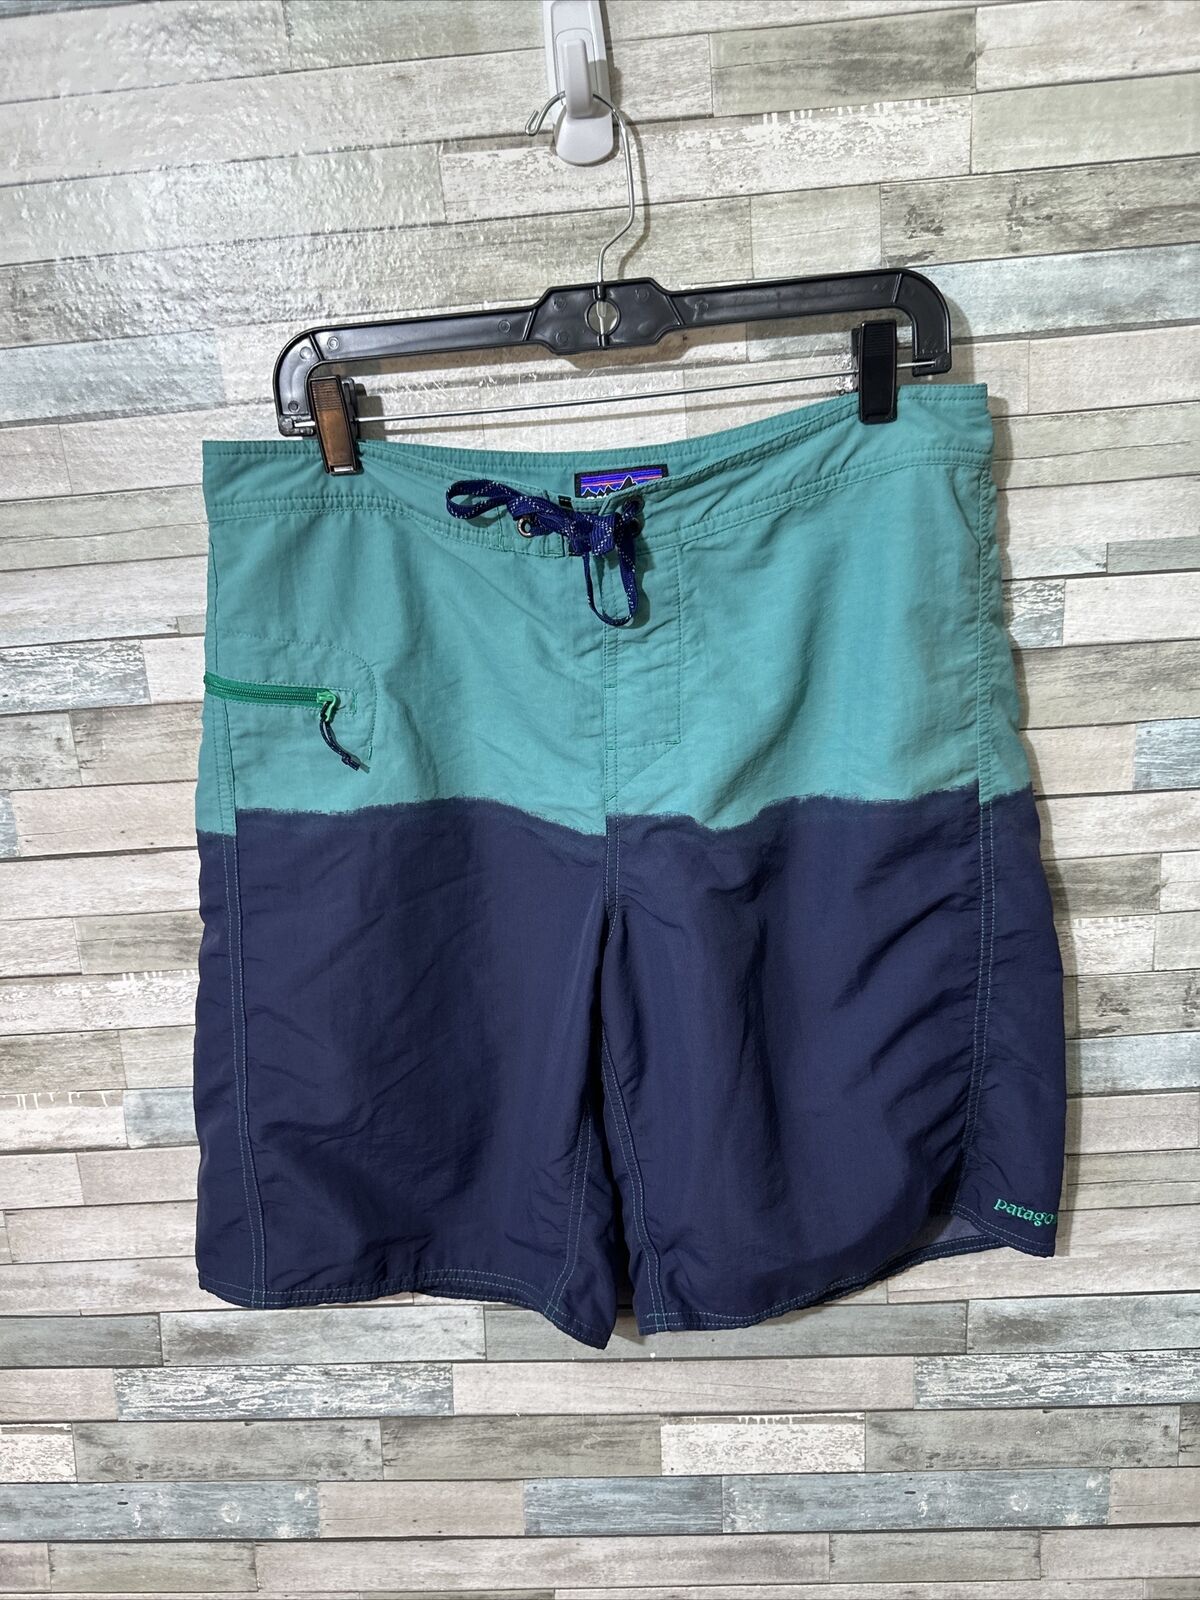 Men’s Patagonia Swim Shorts Blue Size 34 - image 1